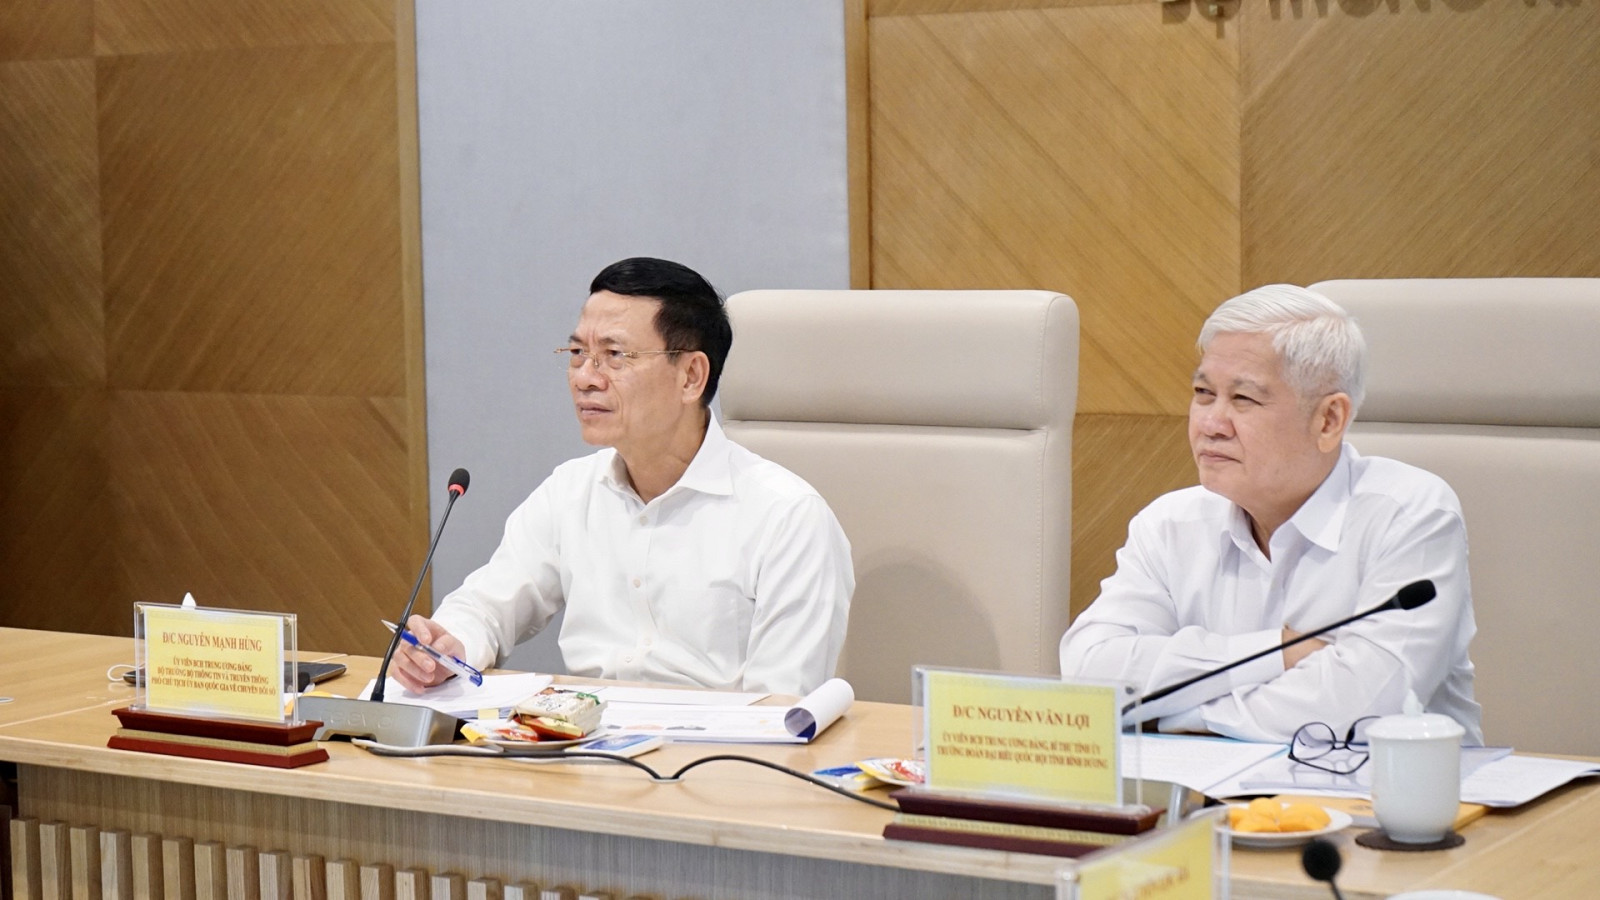 Bộ trưởng Nguyễn Mạnh Hùng cho biết qua buổi làm việc, bộ ghi nhận, tiếp thu các ý kiến, kiến nghị của tỉnh Bình Dương và sẽ có hướng dẫn cụ thể để công tác chuyển đổi số của tỉnh tốt hơn trong thời gian tới.